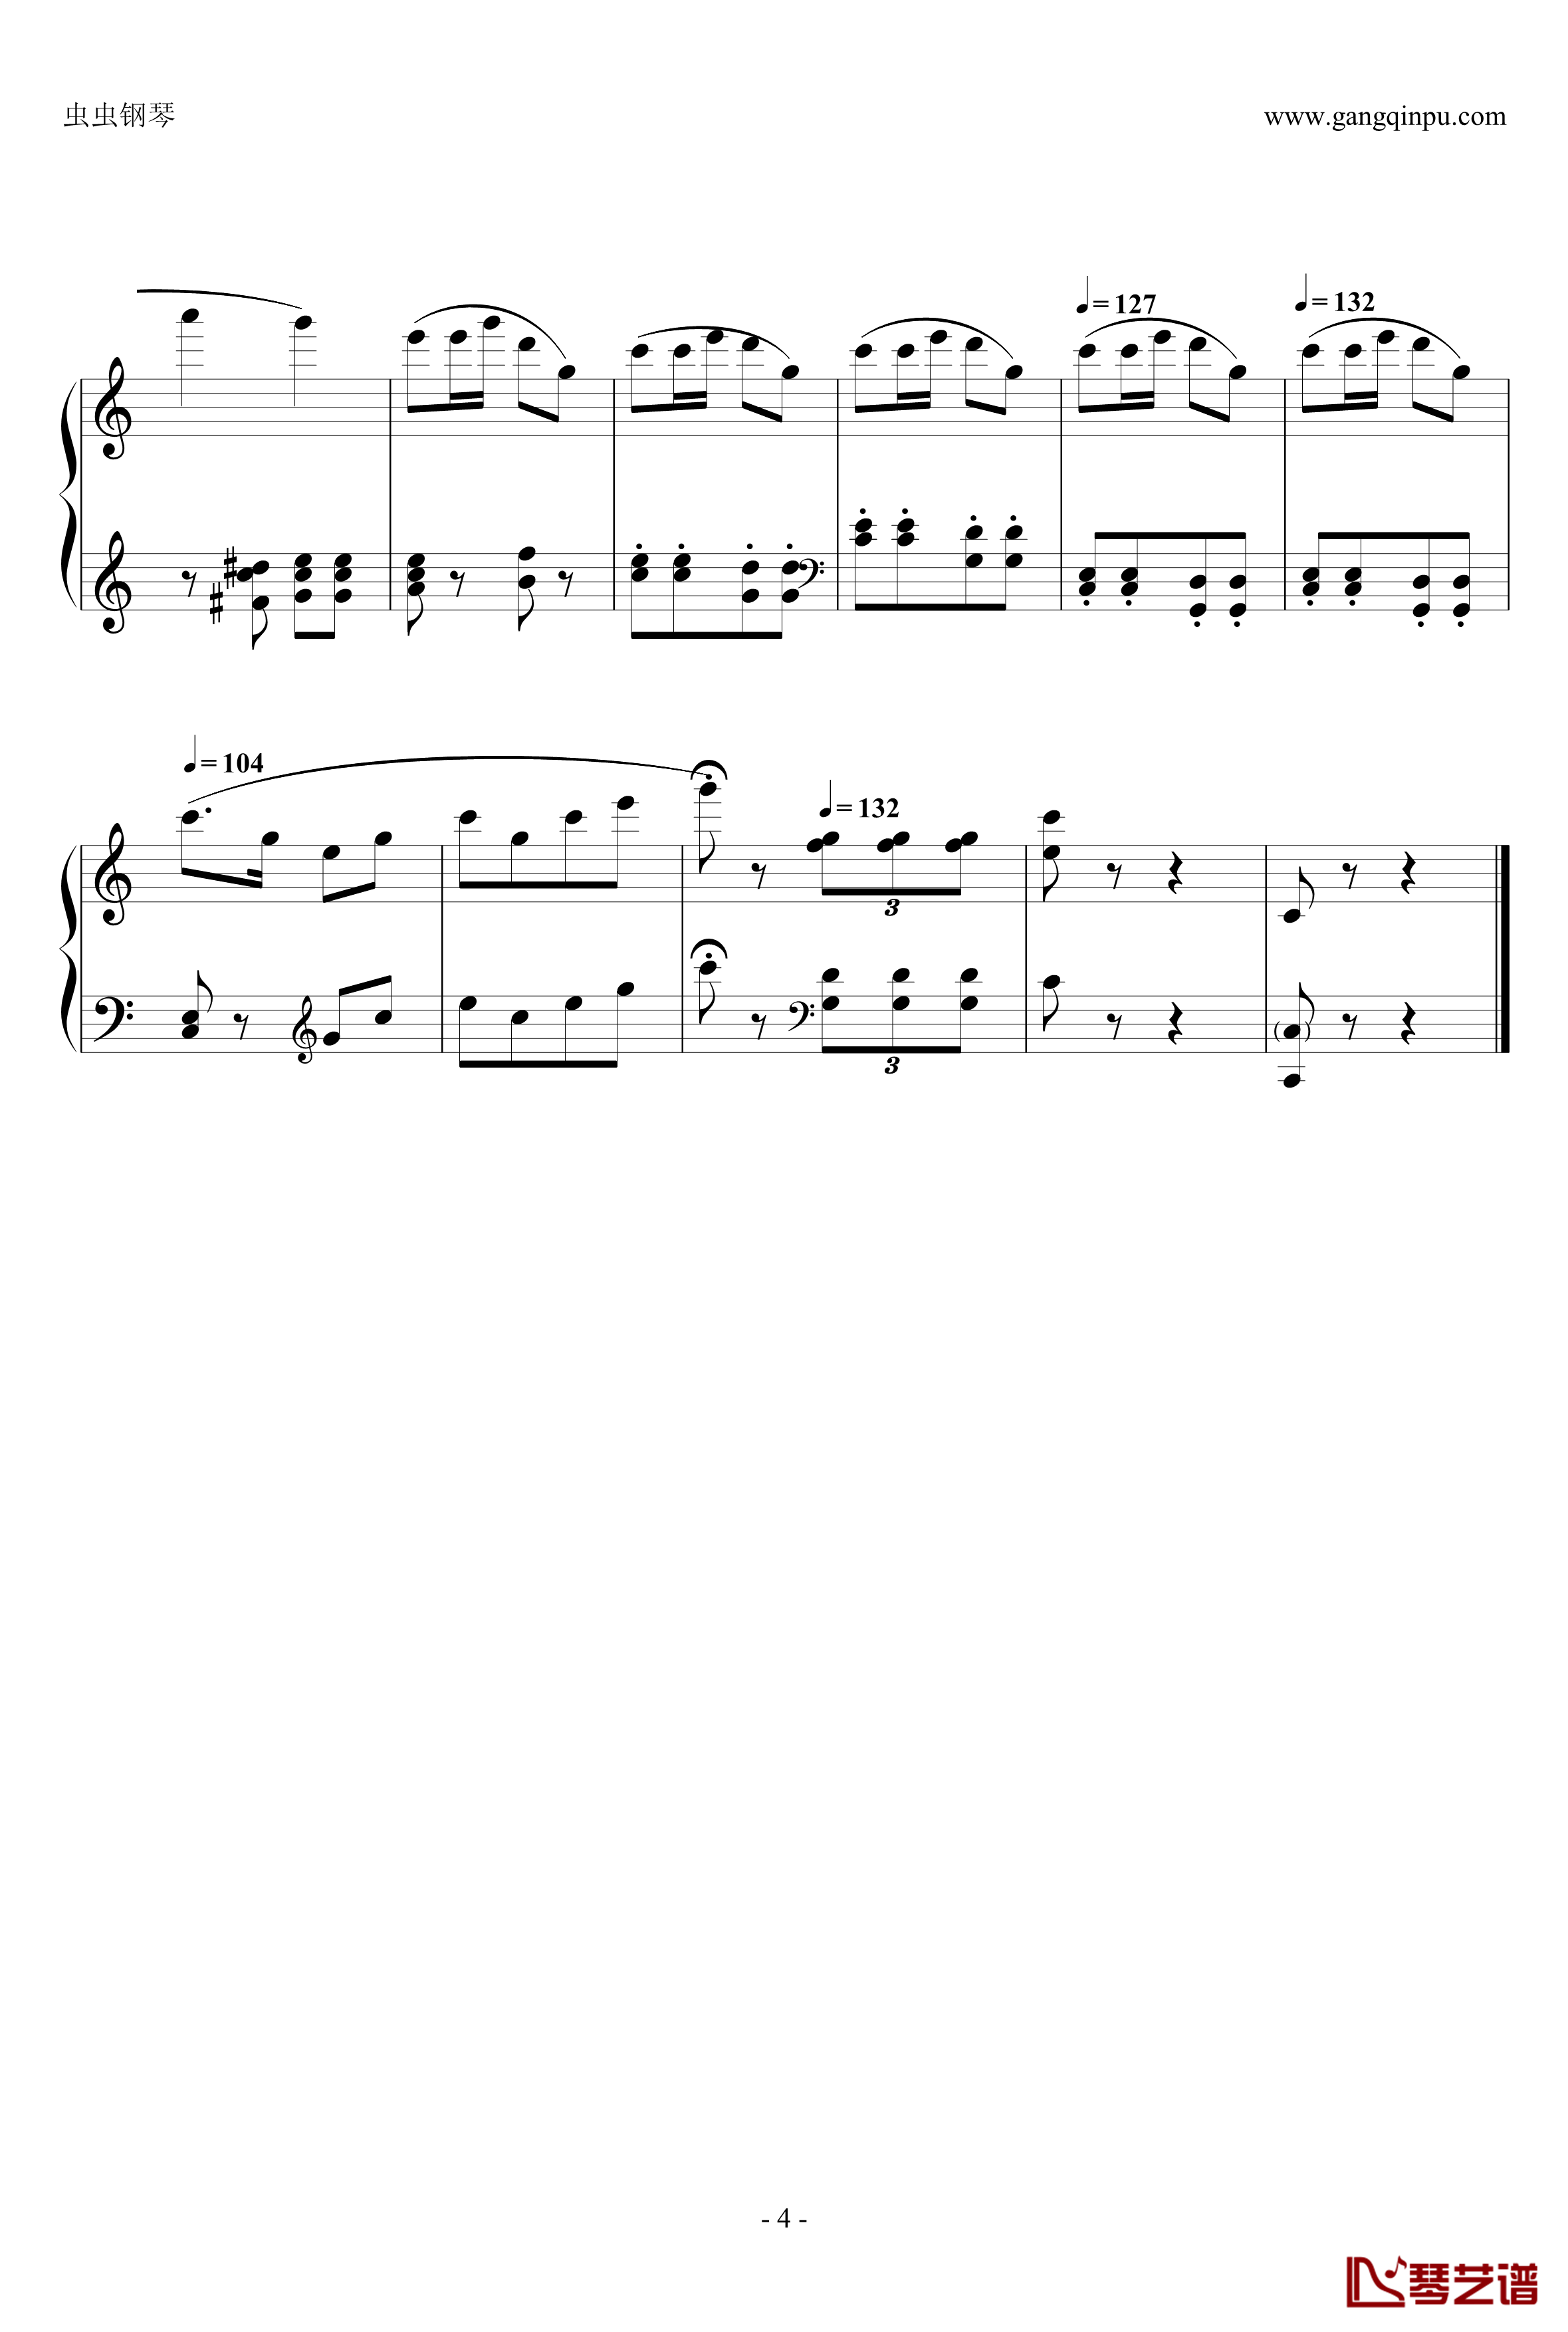 共产儿童团歌钢琴谱-简易变奏曲-甘壁华4